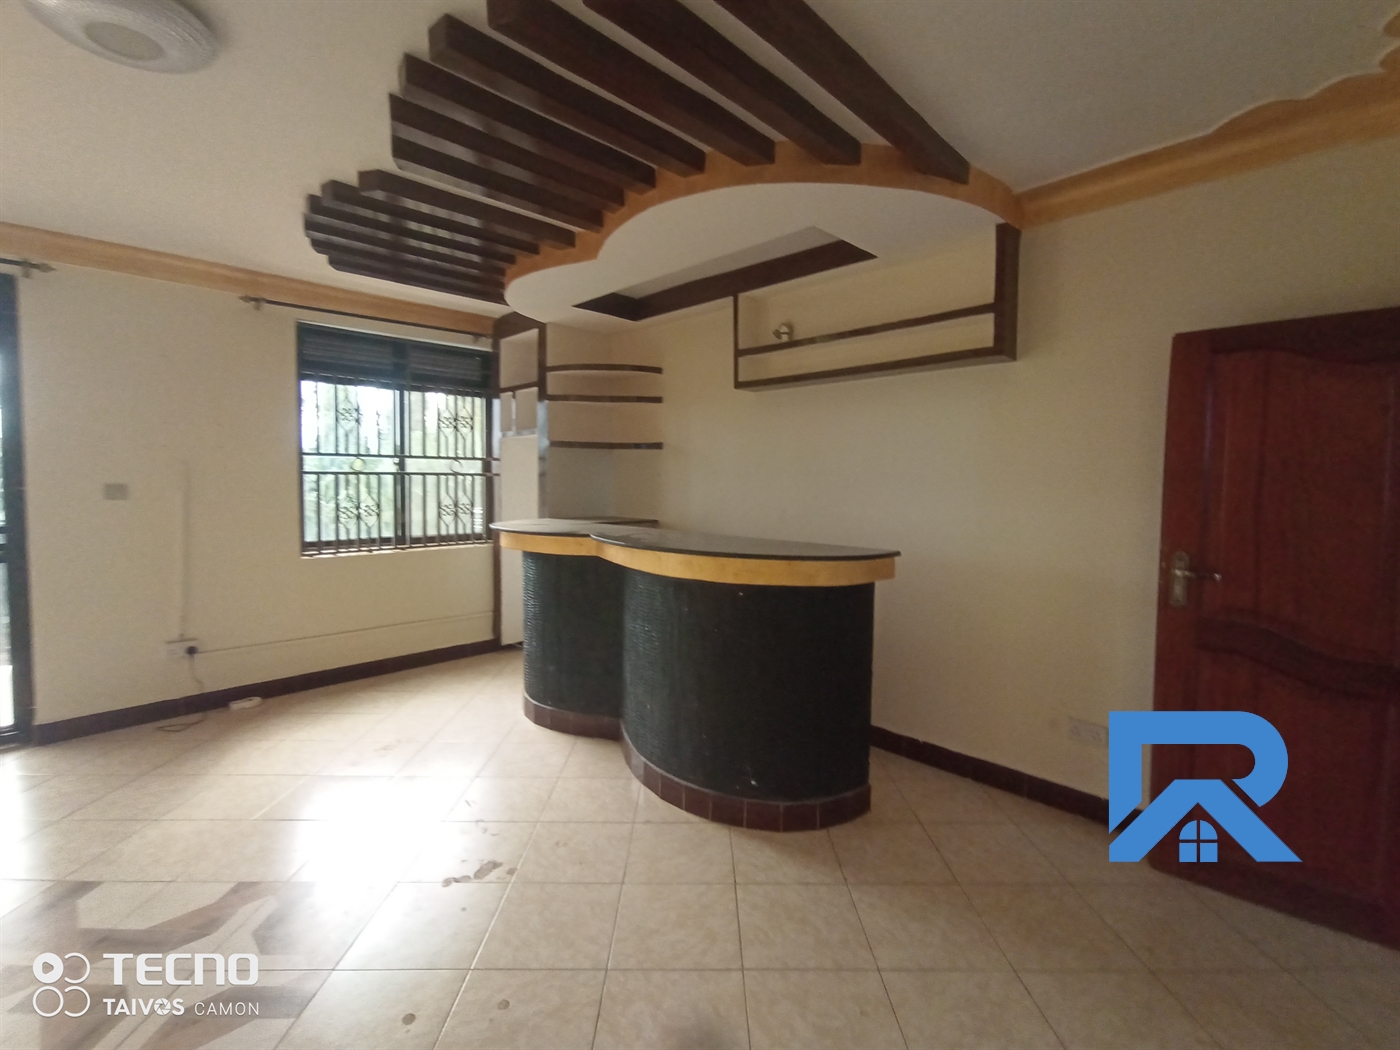 Apartment for rent in Munyonyo Kampala